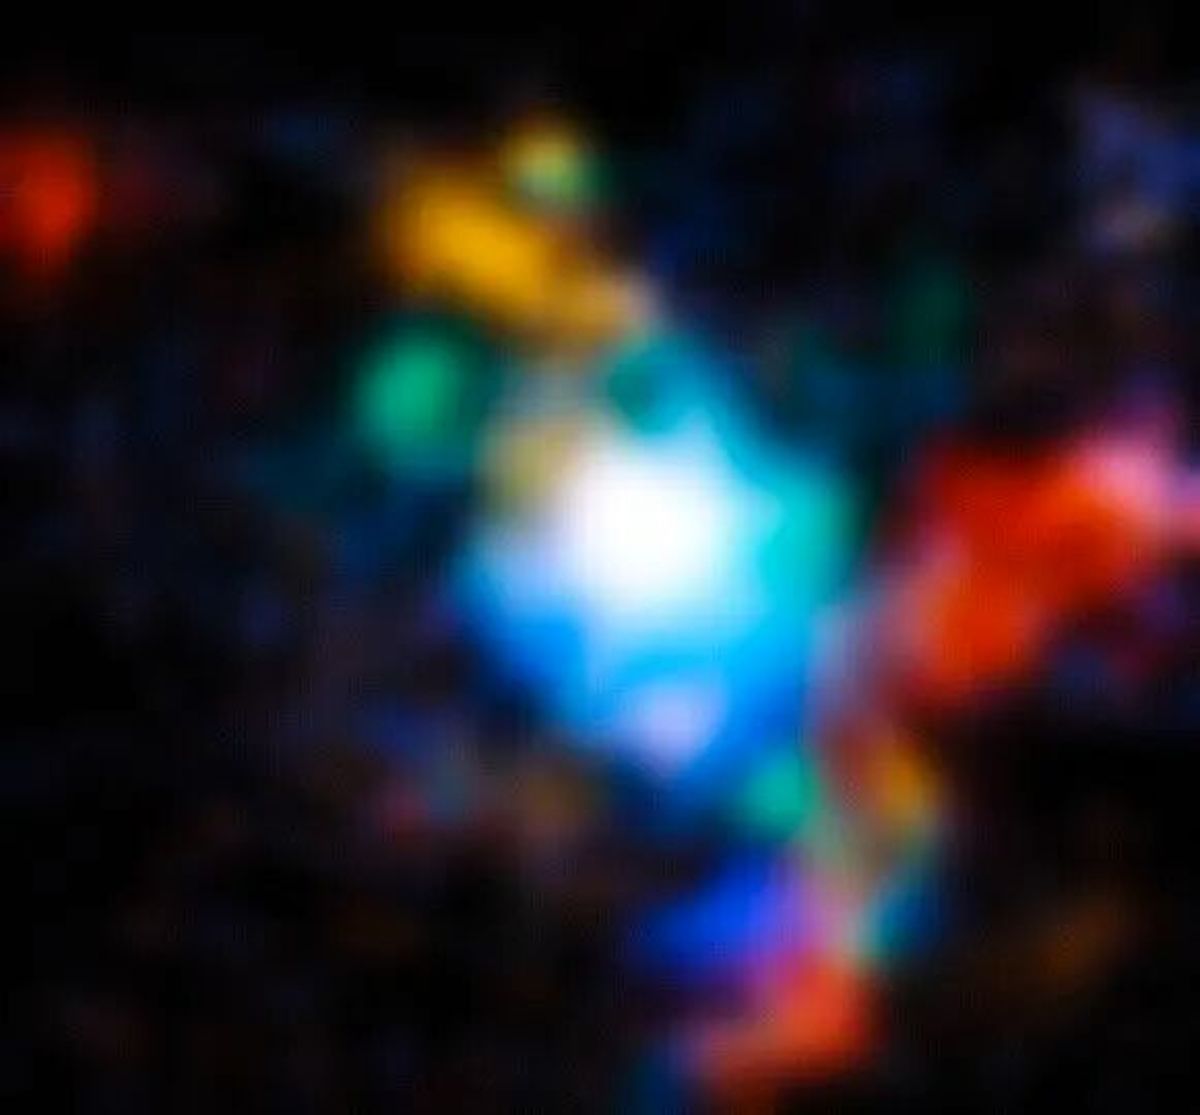 کشف یک خوشه کهکشانی شگفت انگیز در کیهان اولیه